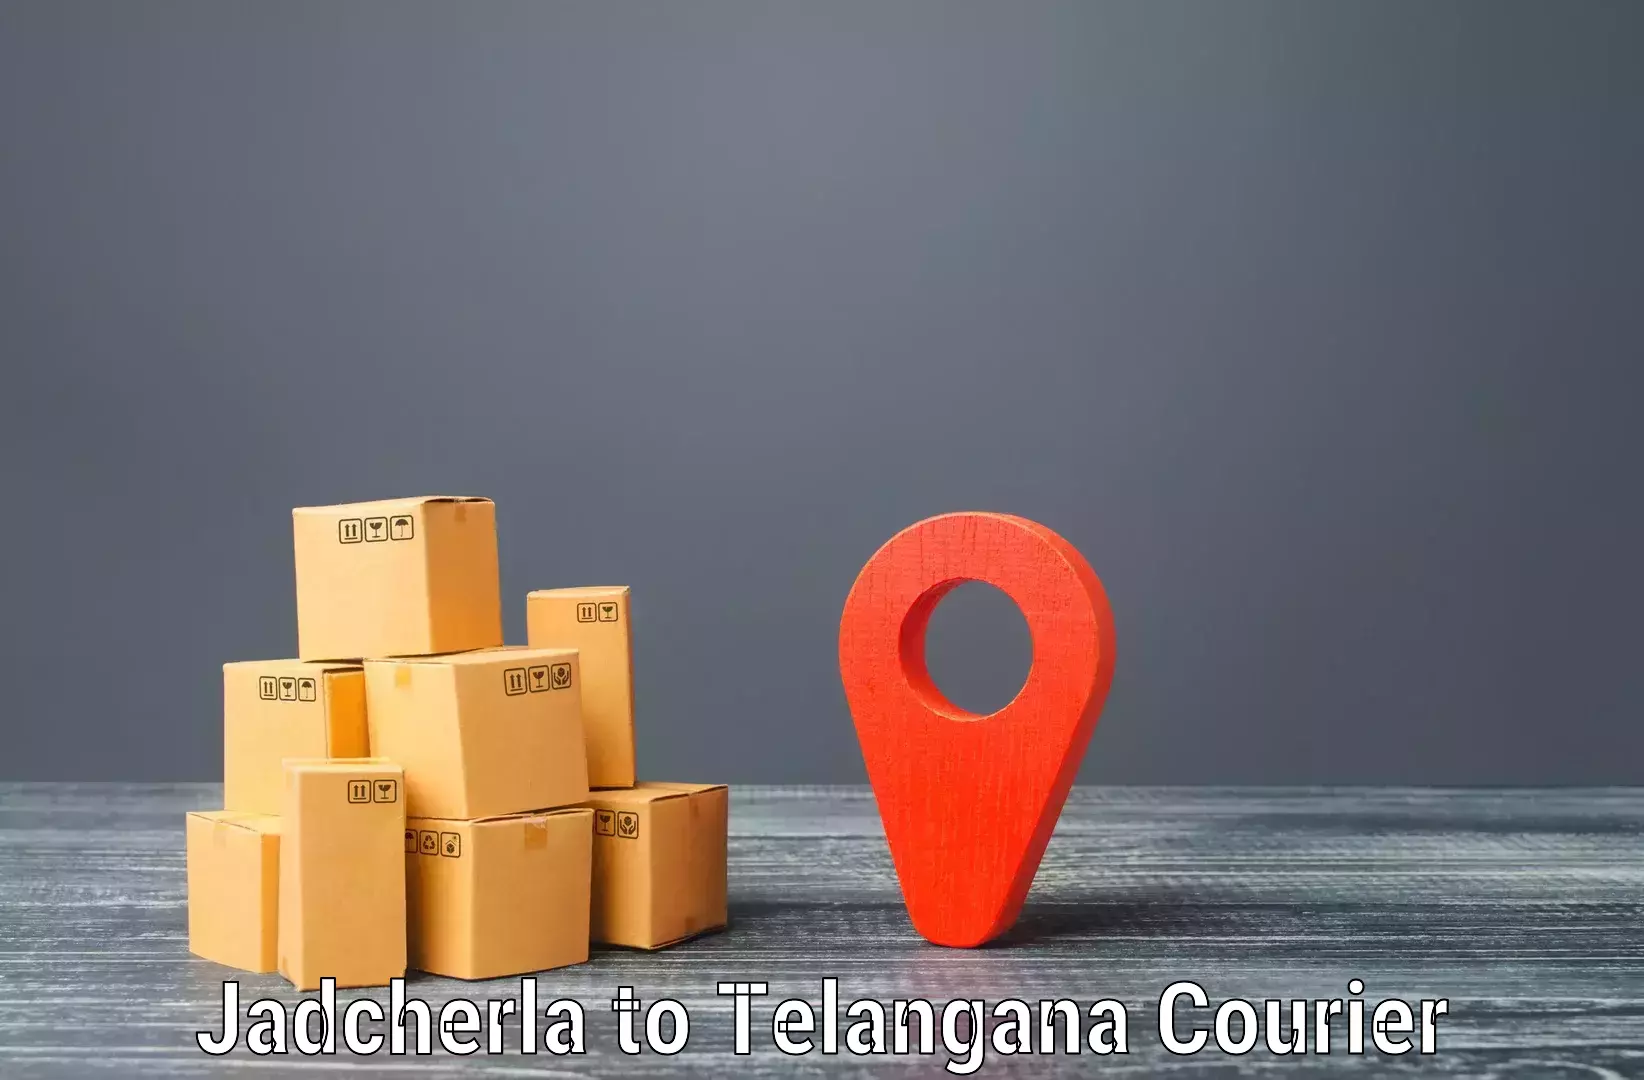 Special handling courier in Jadcherla to Madnoor